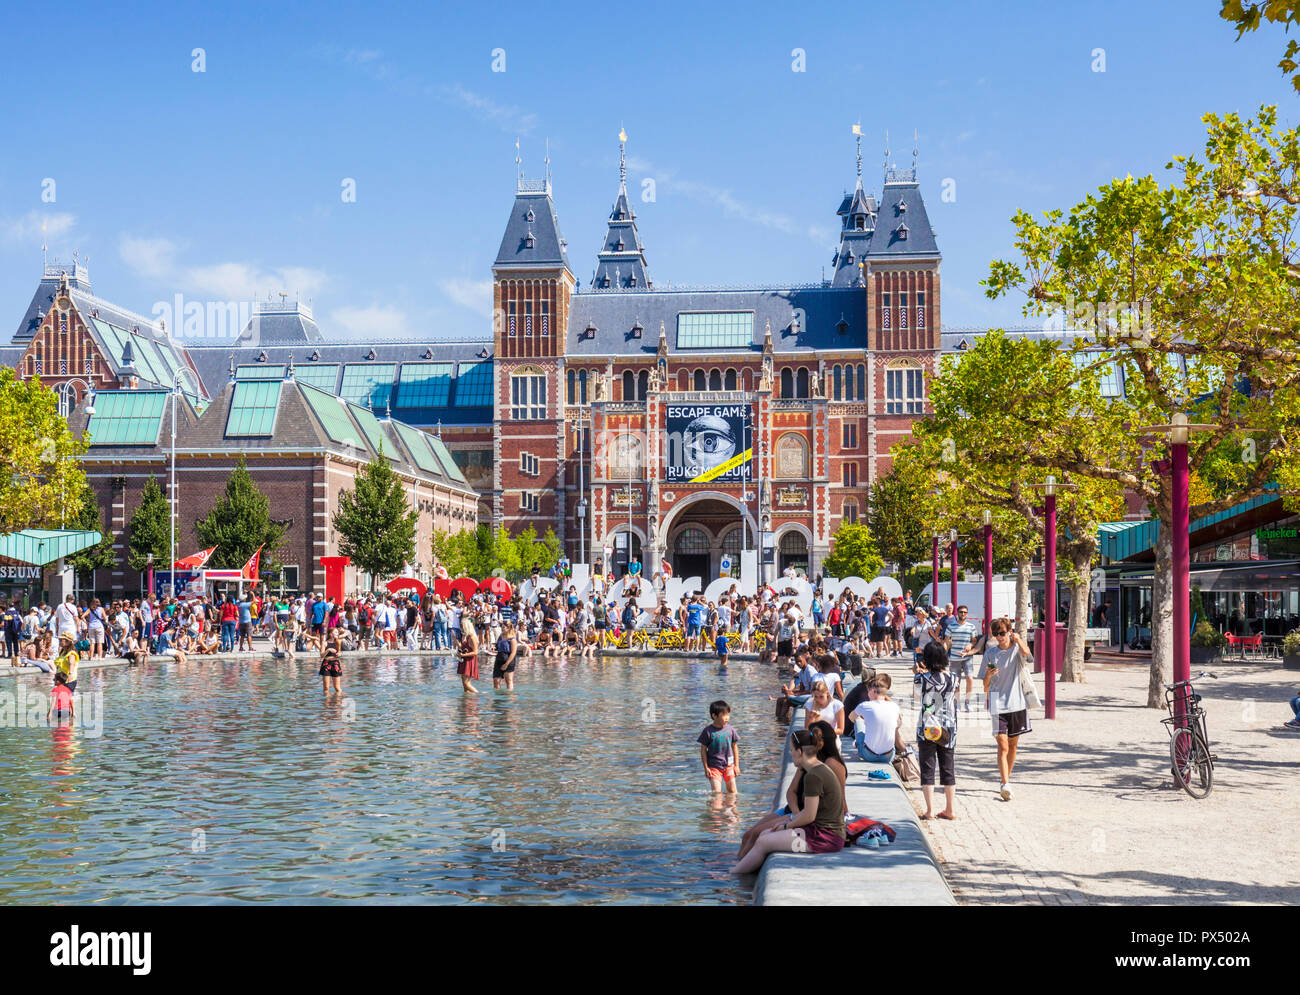 Rijksmuseum Amsterdam Amsterdam Dutch art gallery et musée de l'extérieur avec piscine et je signe d'Amsterdam Amsterdam Hollande Pays-bas eu Europe Banque D'Images